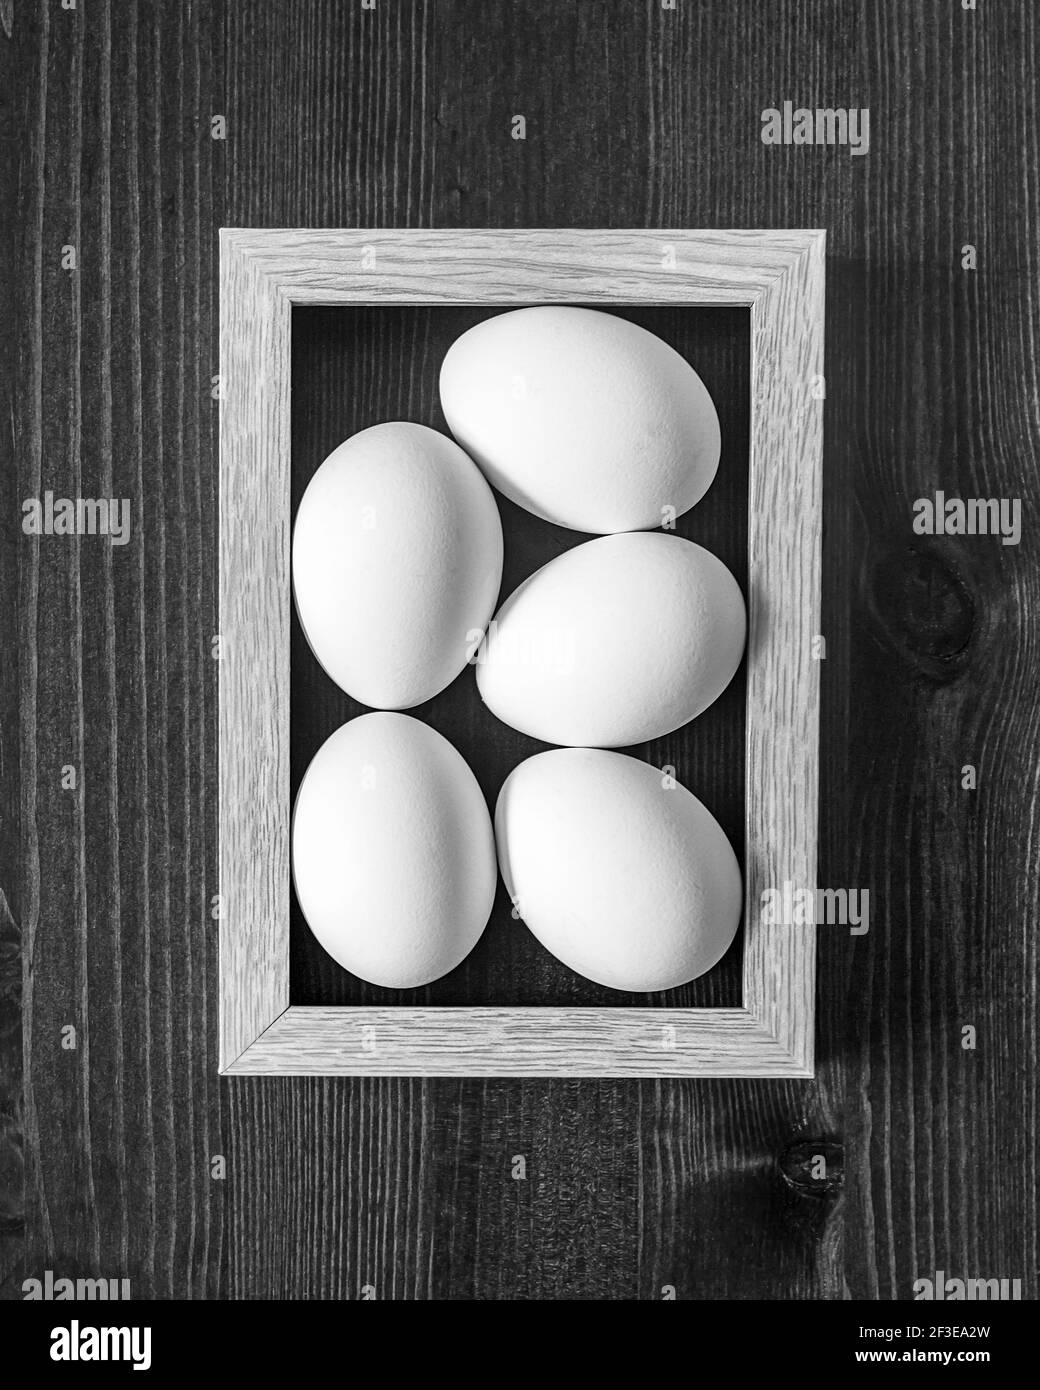 El concepto de un alimento natural sano simple. Pollo, huevos blancos y frescos en un marco sobre un fondo de madera. Foto de comida en blanco y negro, vista superior. Comp Foto de stock